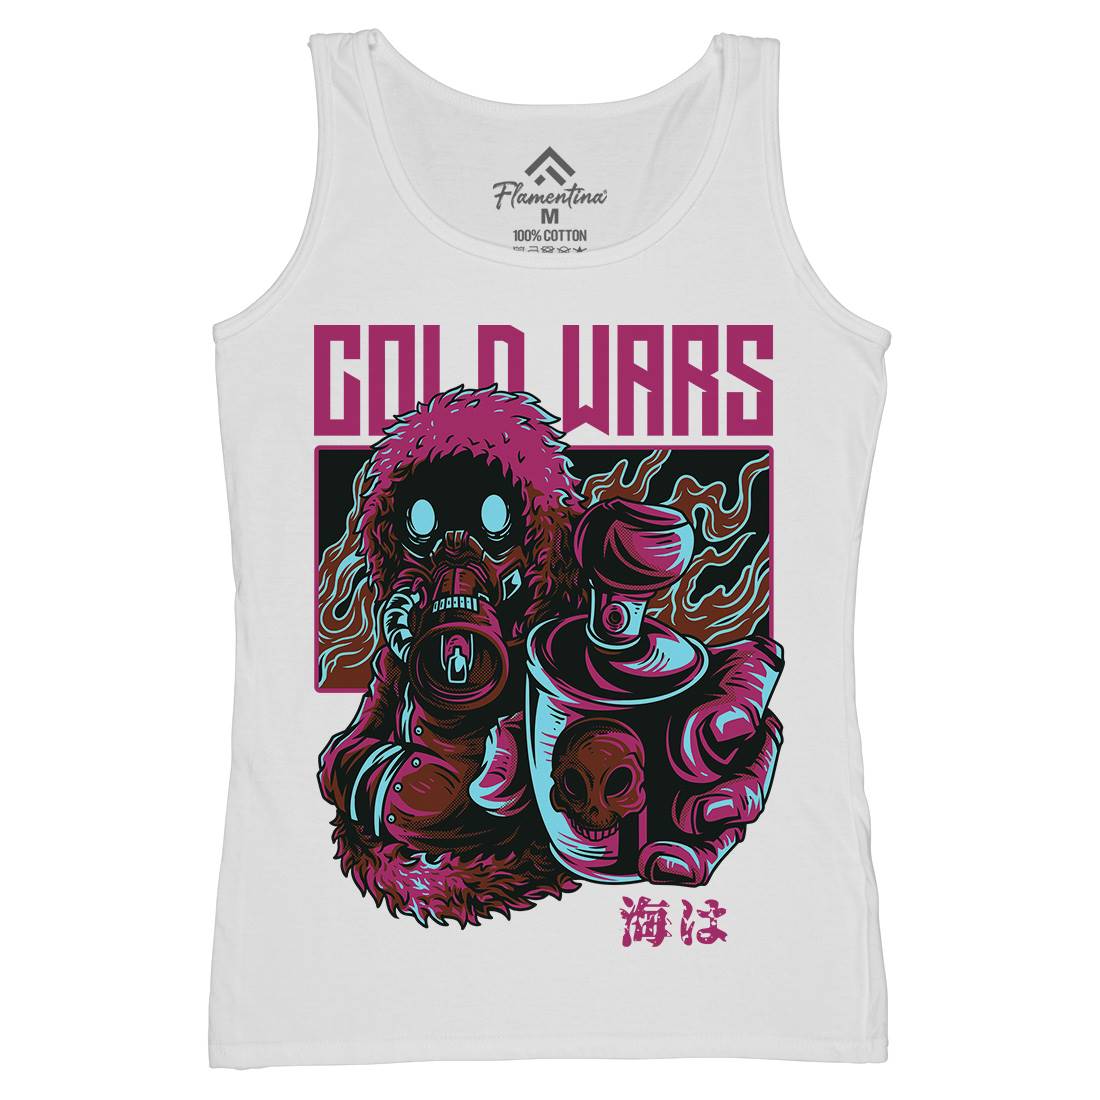 Cold Wars Womens Organic Tank Top Vest Graffiti D727